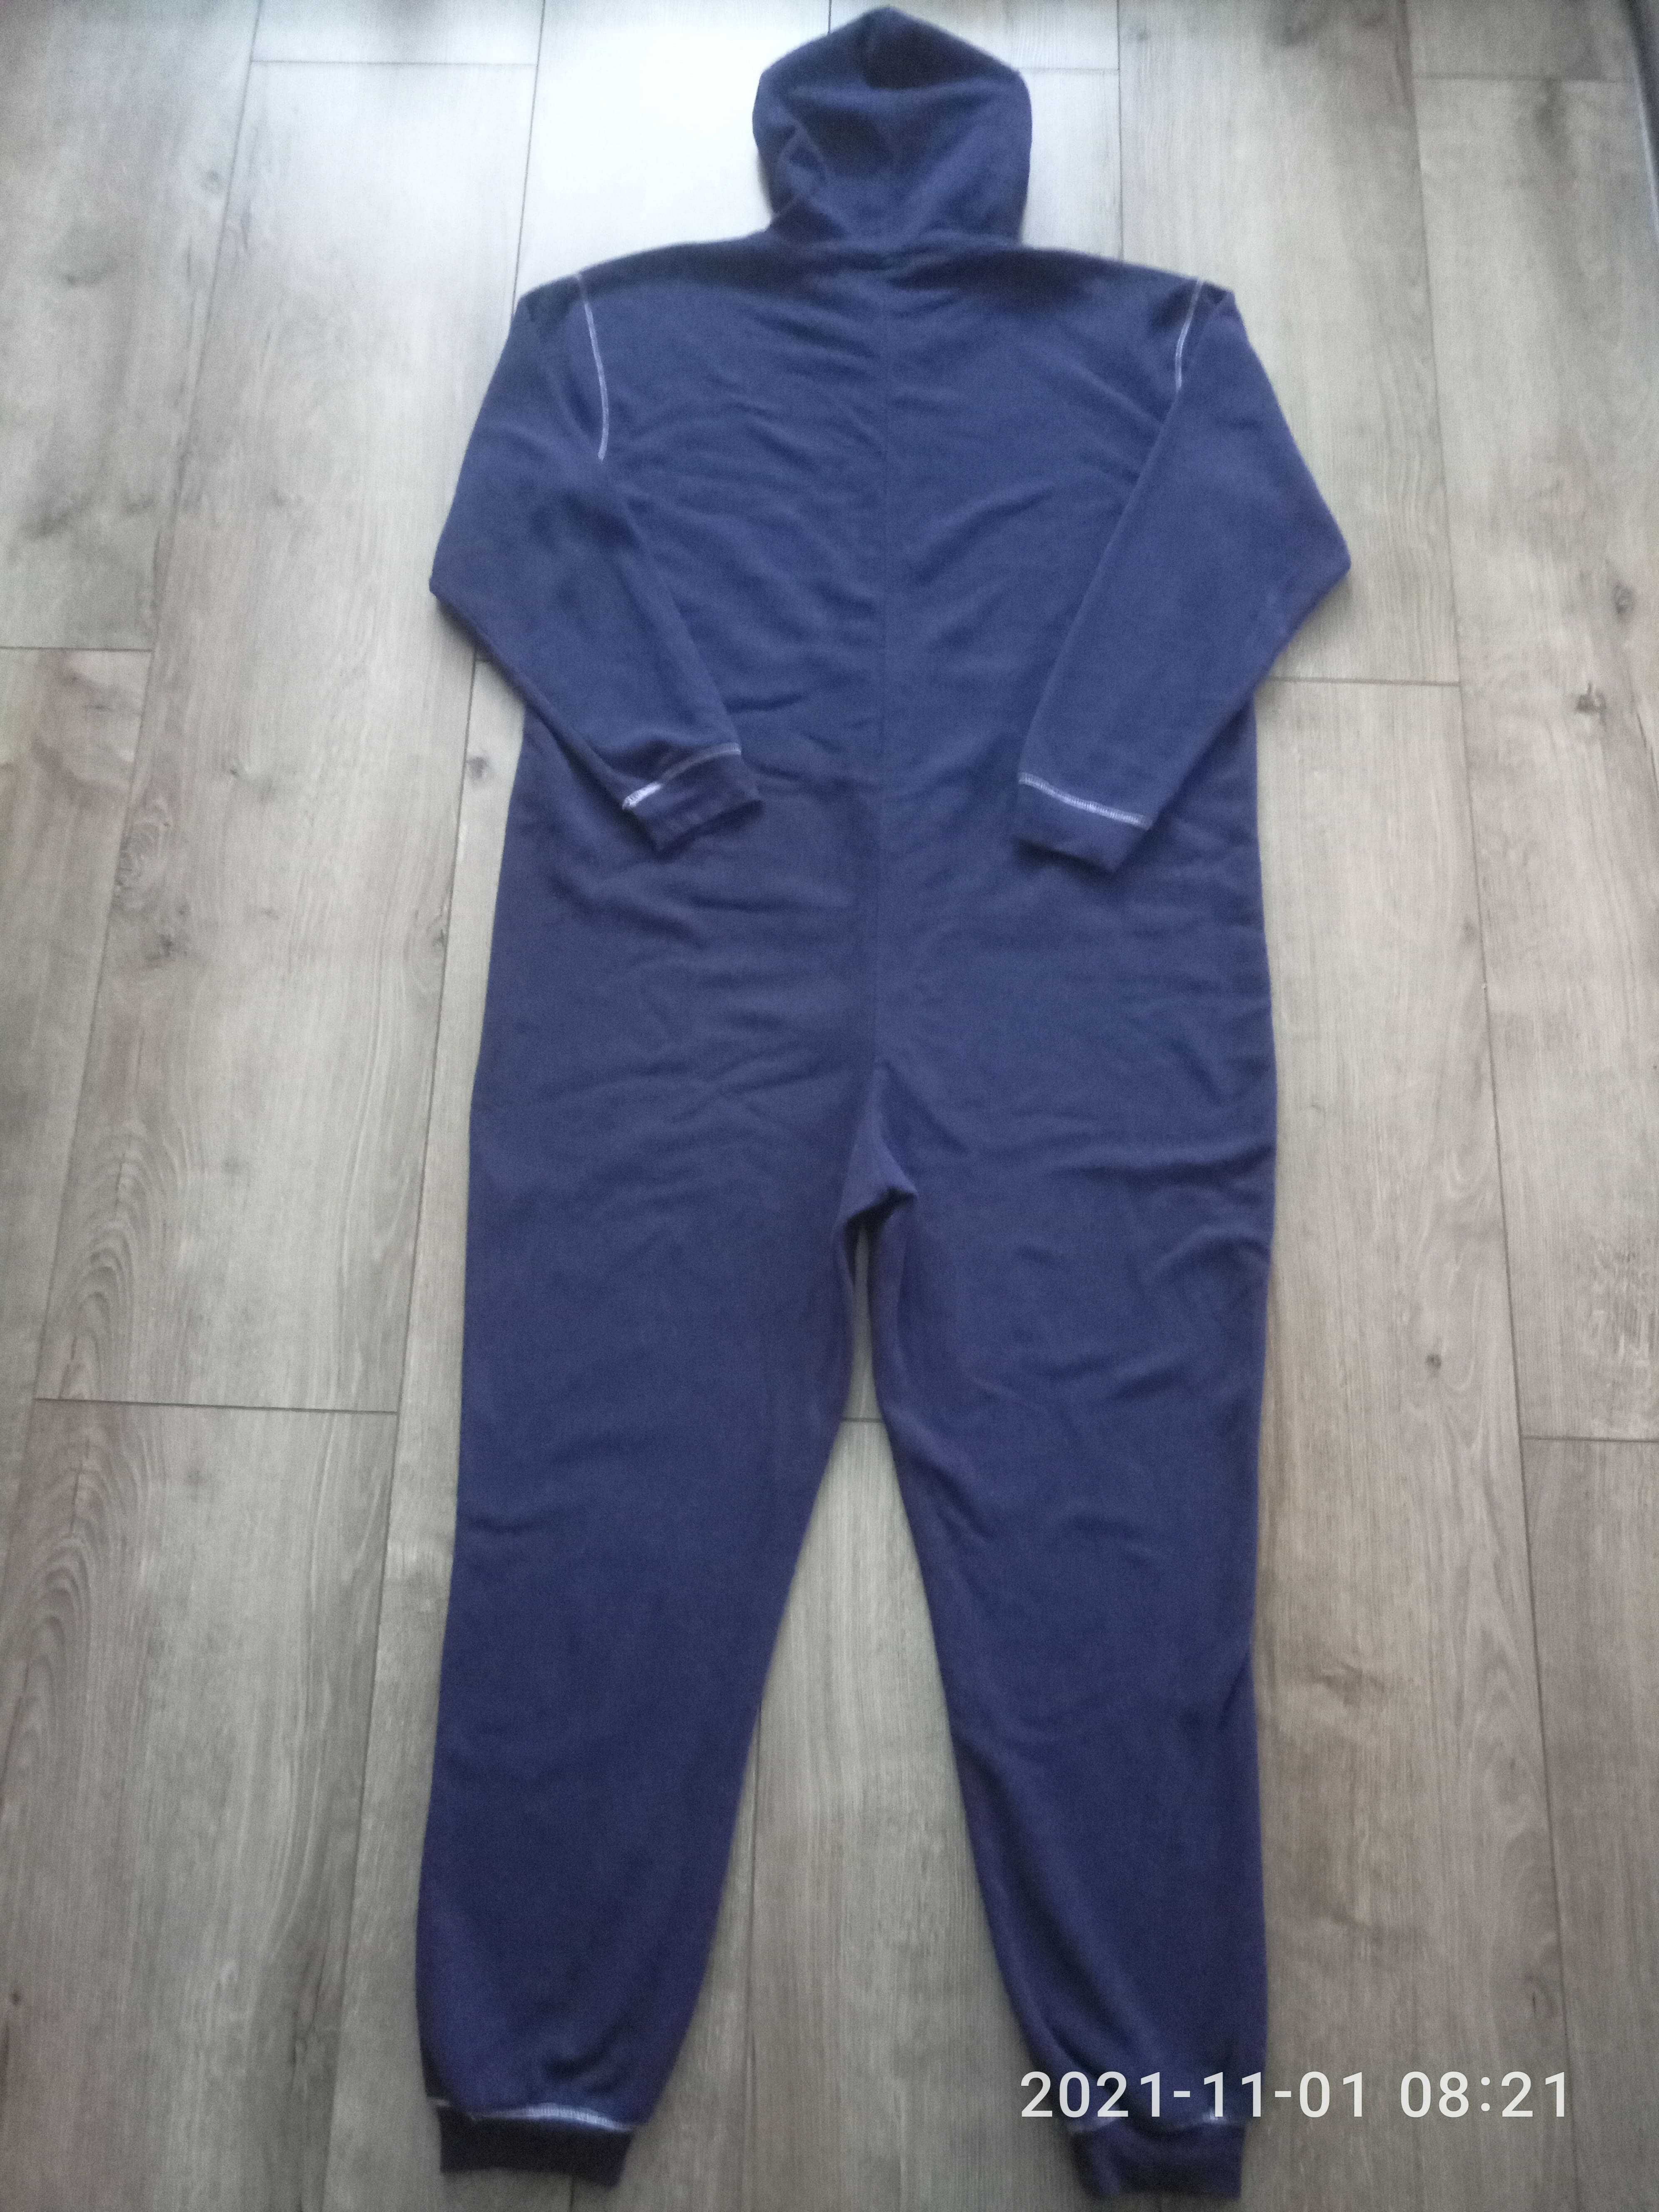 Мягкий флисовый комбинезон/ пижама Оak Valley р.62-64 синего цвета